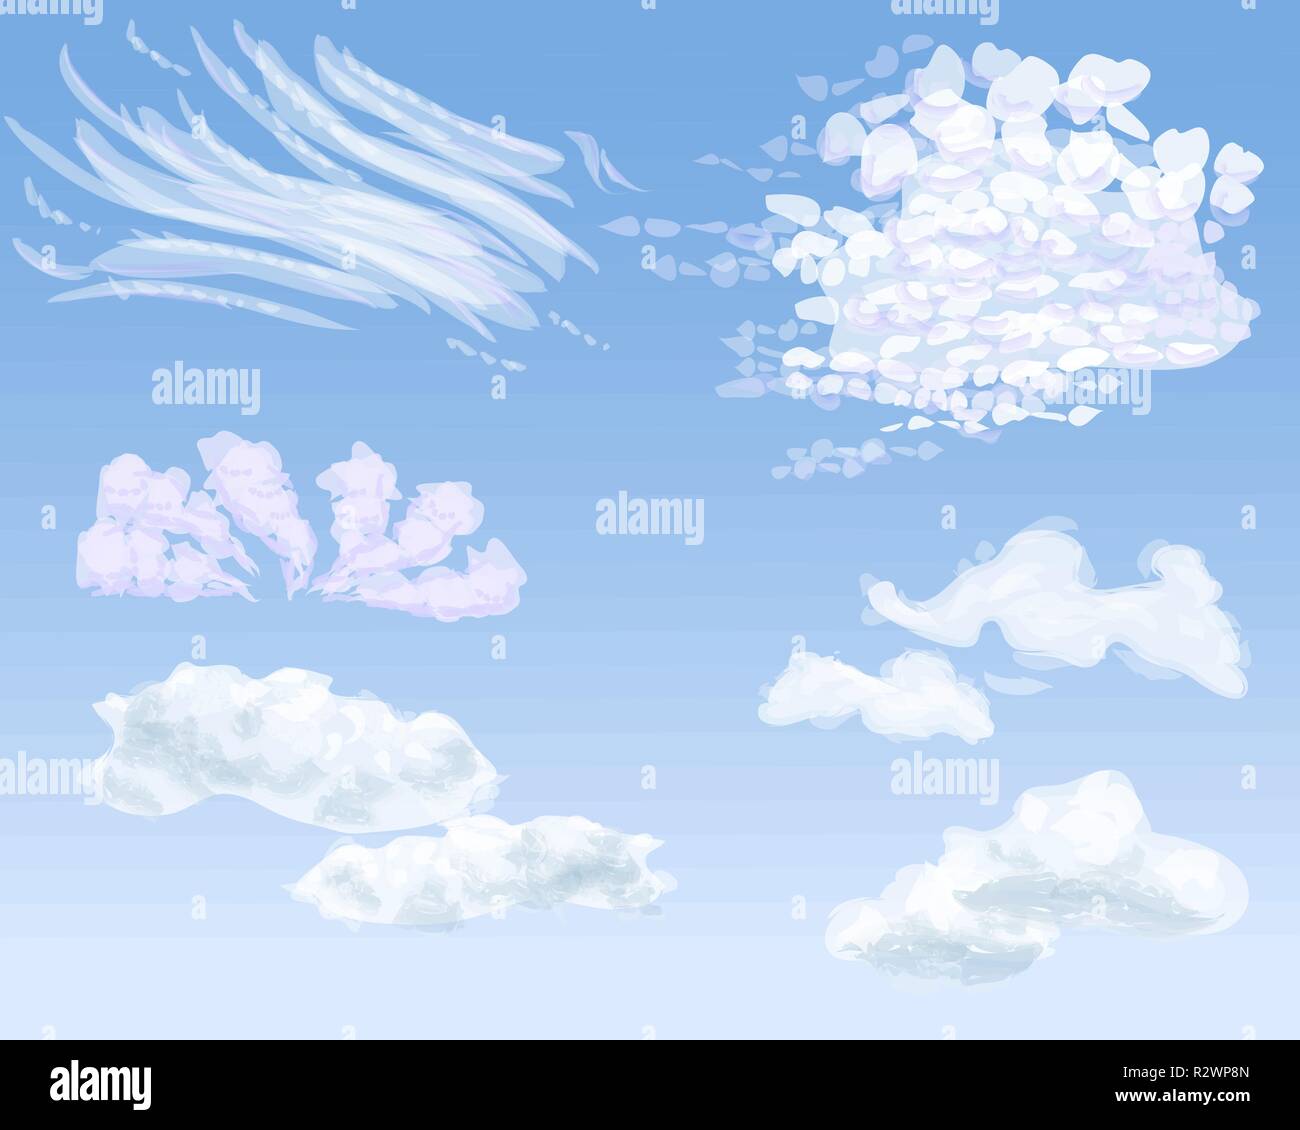 Set Di Diversi Tipi Di Nuvole Sul Cielo Di Giorno Illustrazione Vettoriale Immagine E Vettoriale Alamy